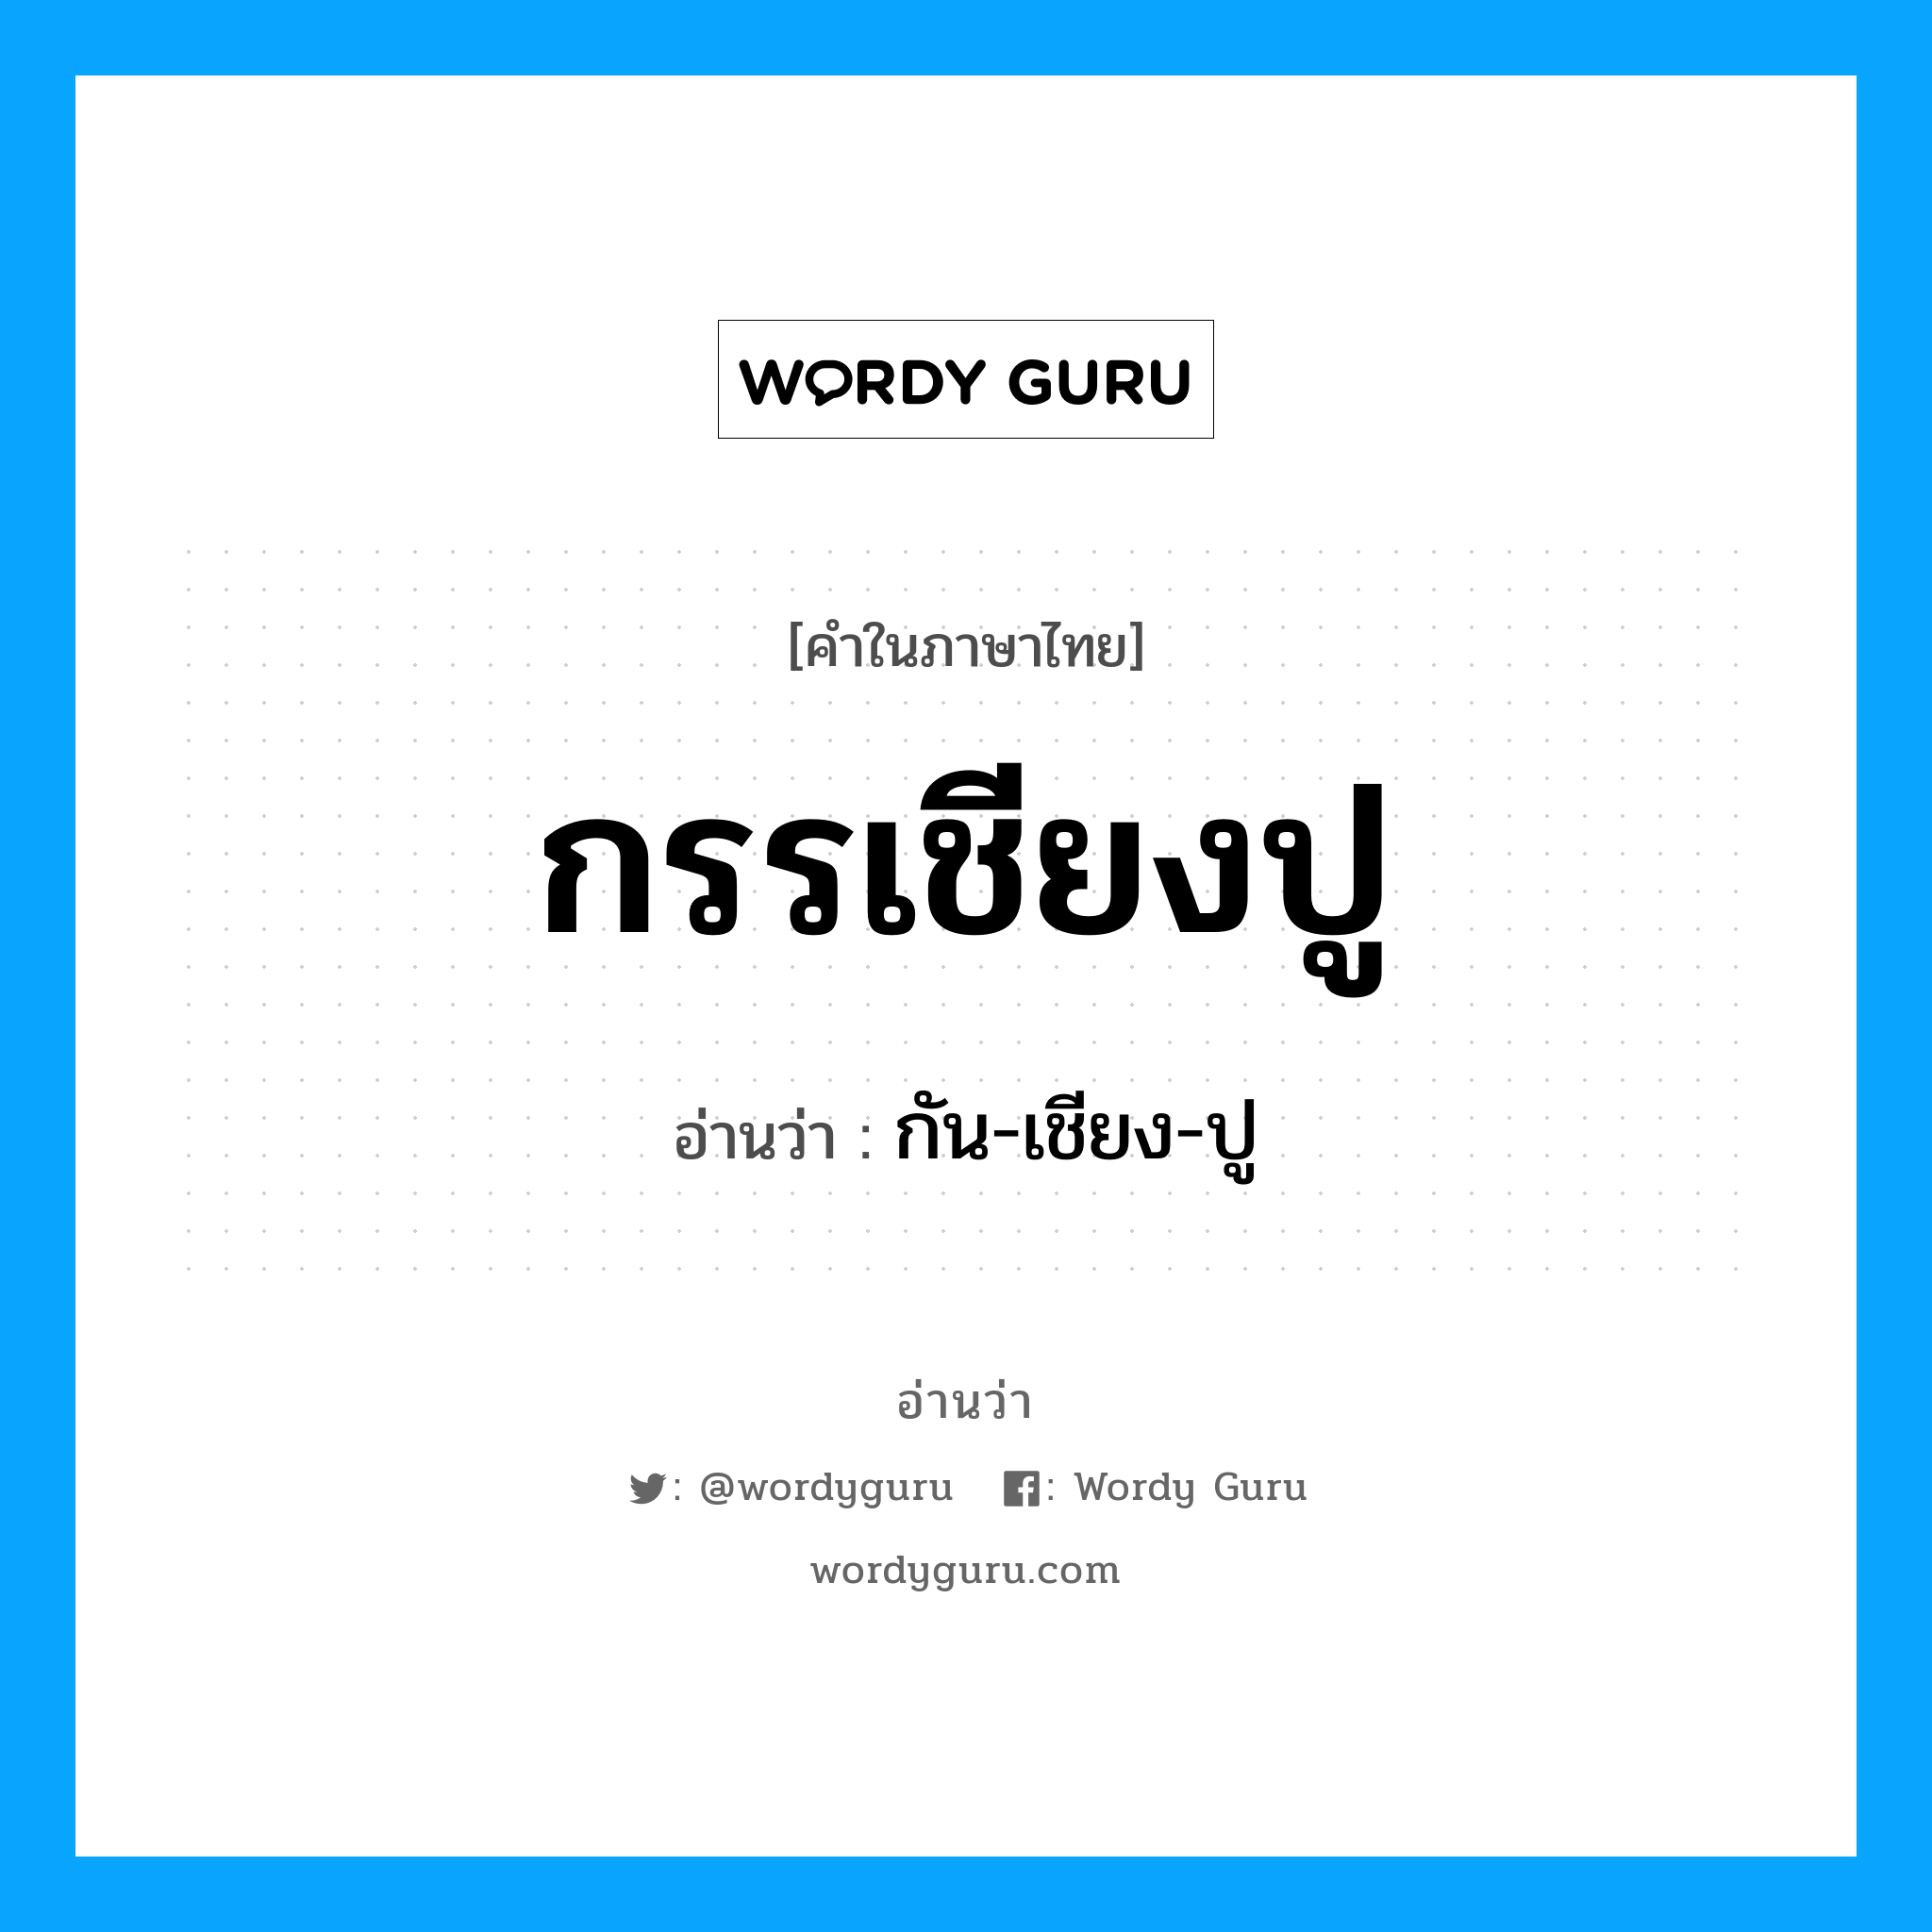 กรรเชียงปู อ่านว่า?, คำในภาษาไทย กรรเชียงปู อ่านว่า กัน-เชียง-ปู